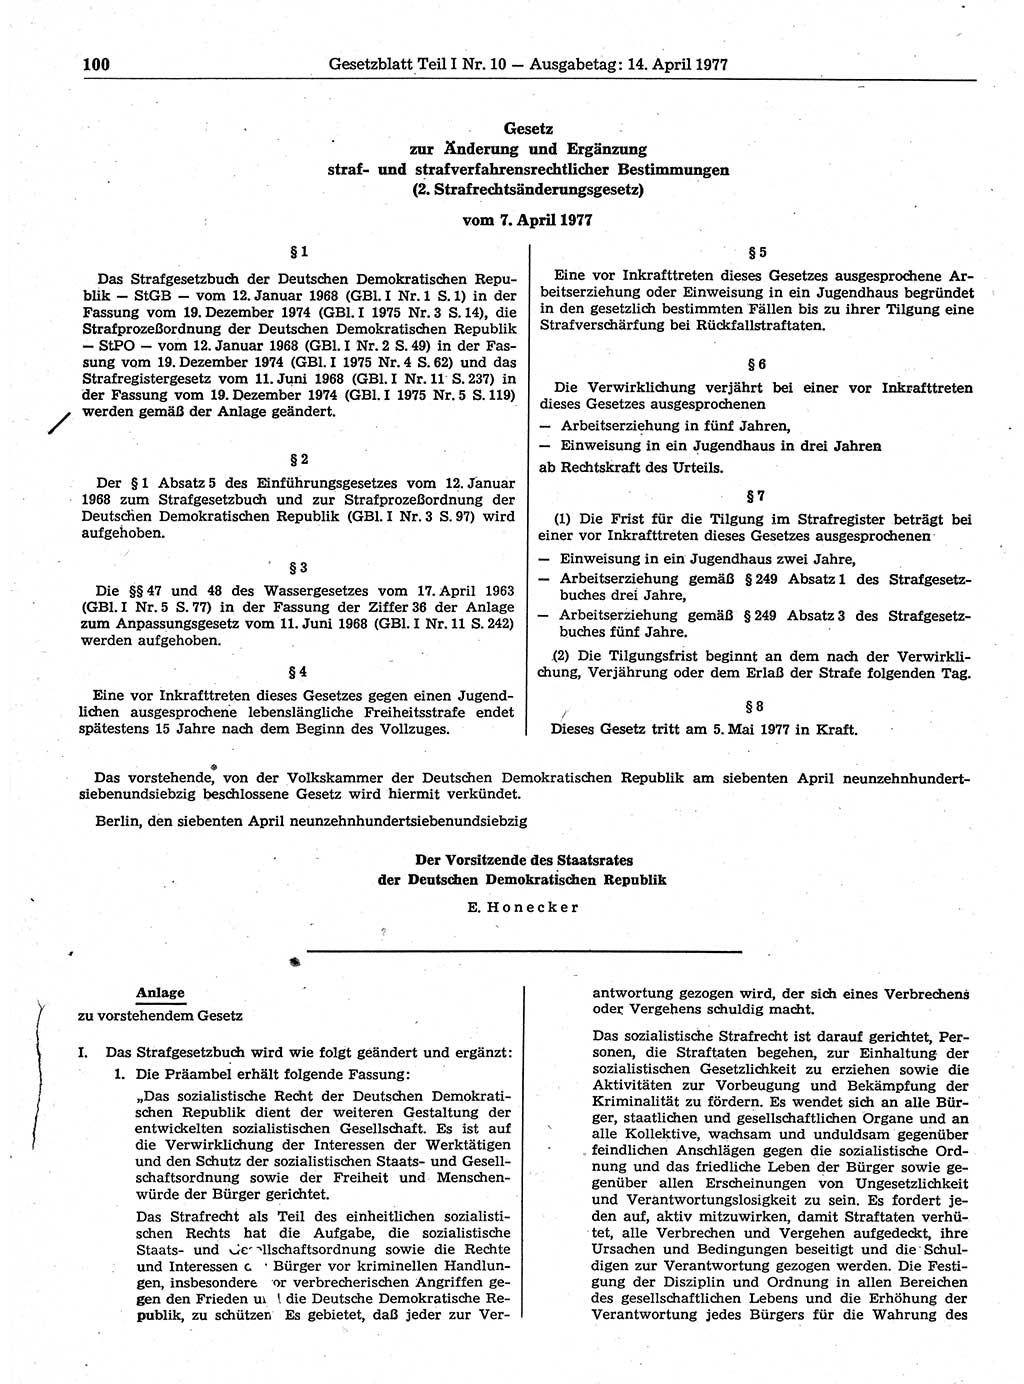 Gesetzblatt (GBl.) der Deutschen Demokratischen Republik (DDR) Teil Ⅰ 1977, Seite 100 (GBl. DDR Ⅰ 1977, S. 100)